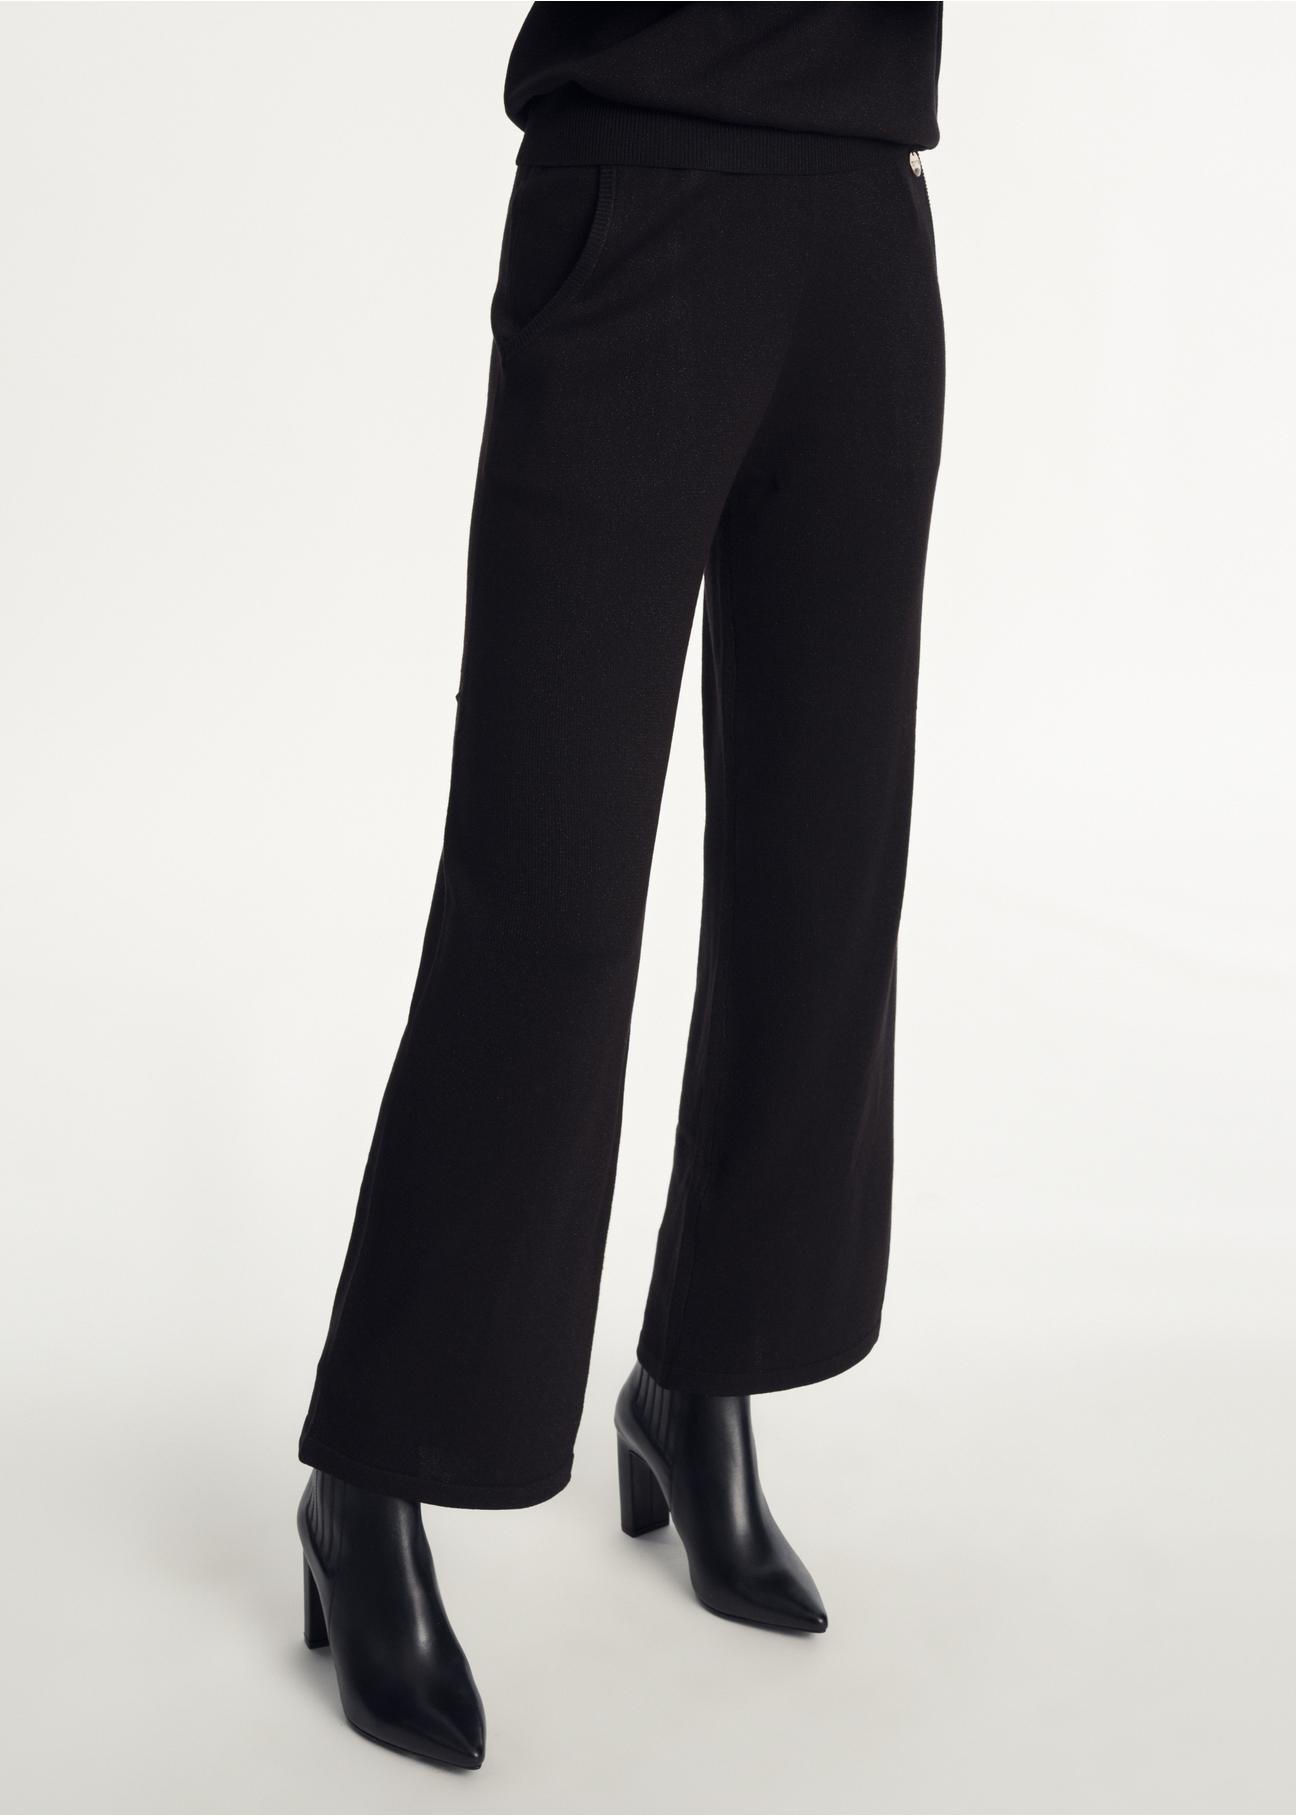 Czarne błyszczące spodnie damskie SPODT-0085-99(Z23)